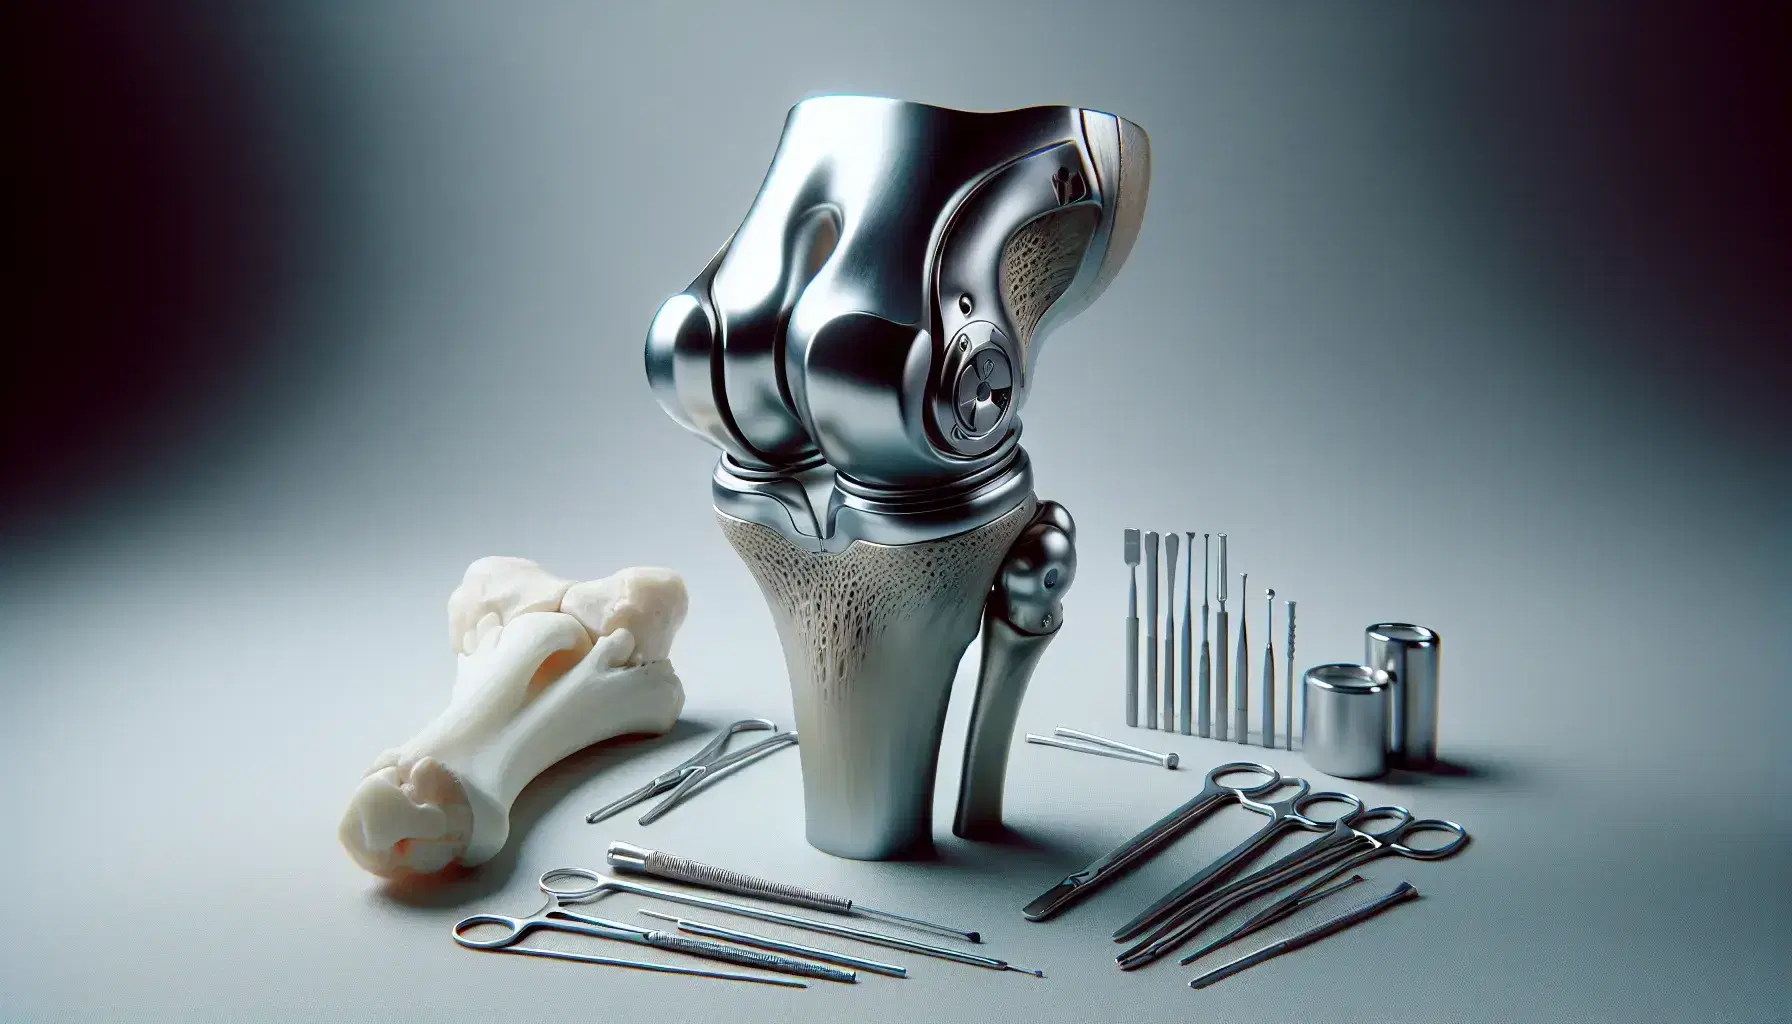 Prótesis de rodilla metálica con secciones articuladas y hueso humano representativo al lado, sobre fondo gris y herramientas quirúrgicas en segundo plano.